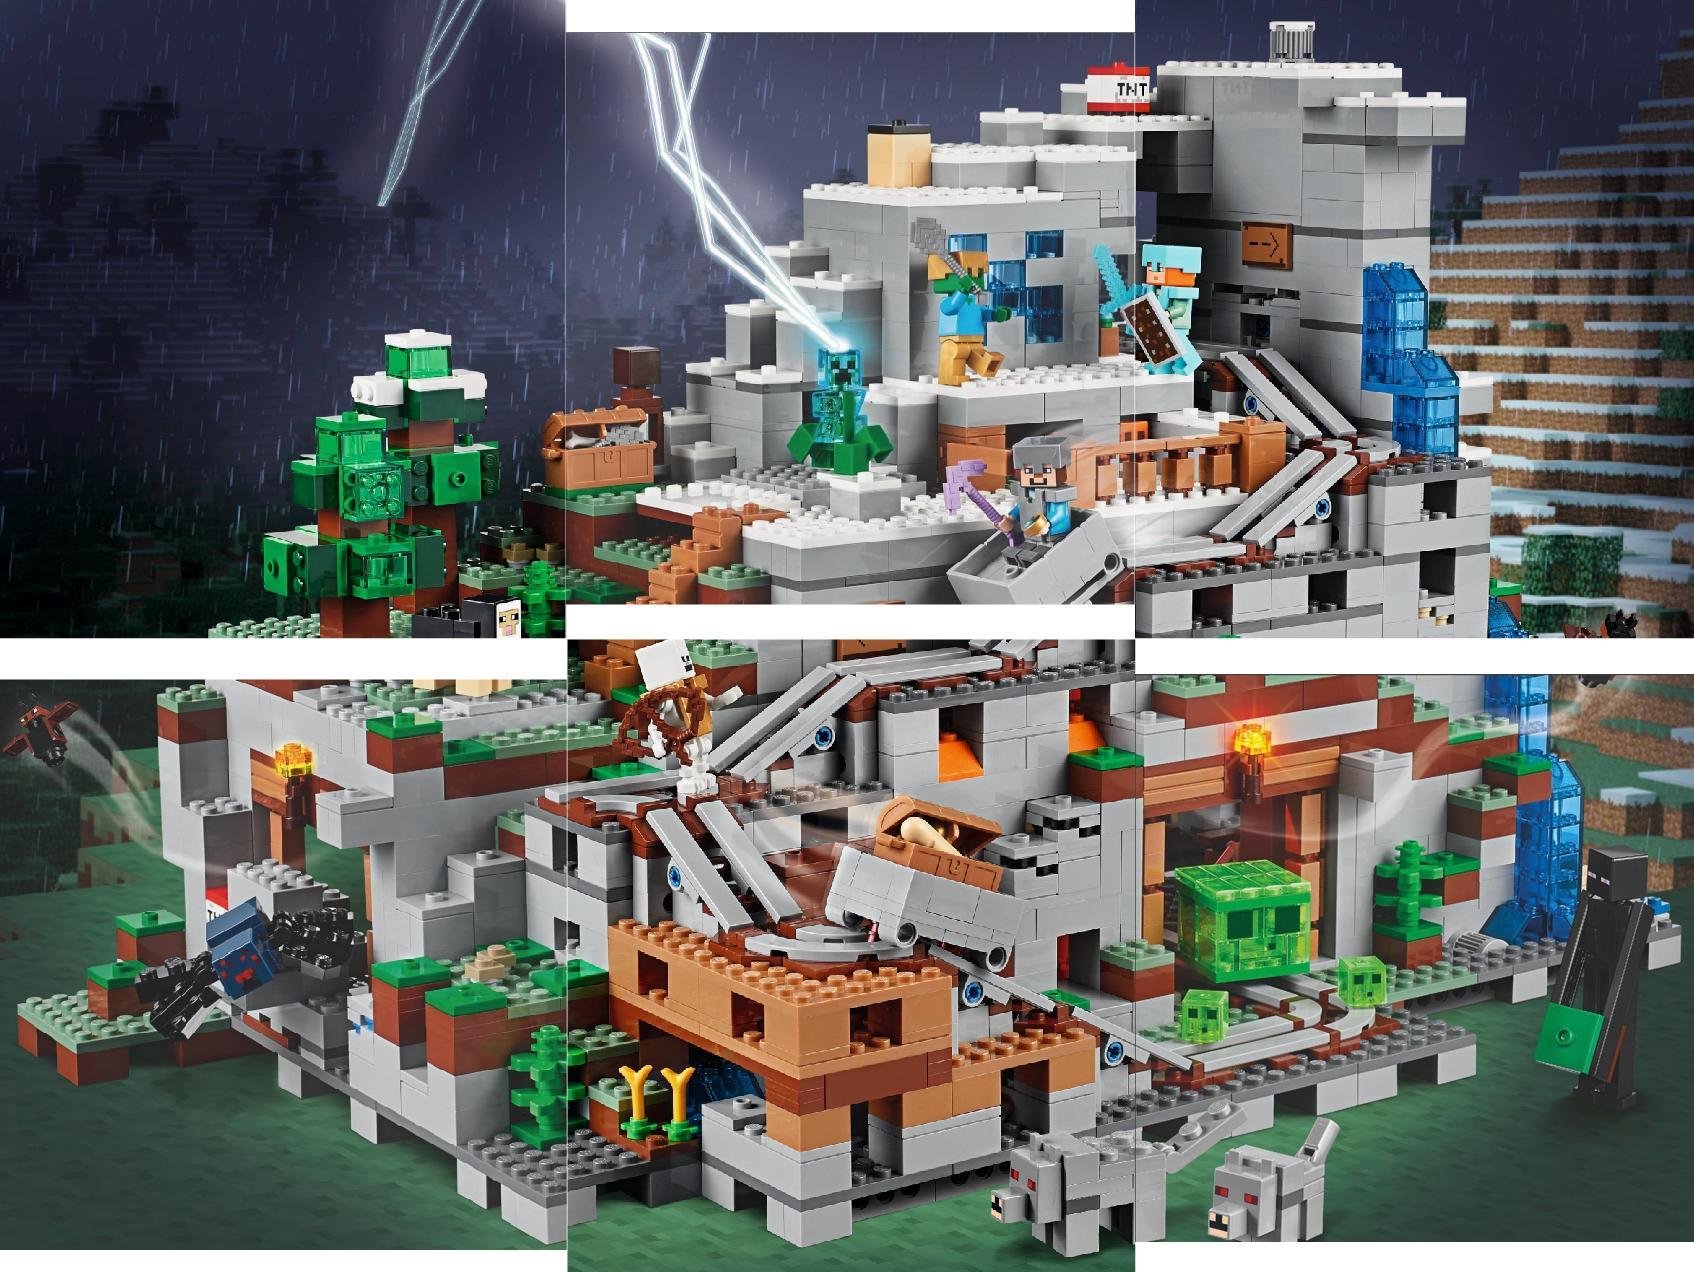 Minecraft The Mountain Cave Revealed Brickset Lego Set Guide And Database